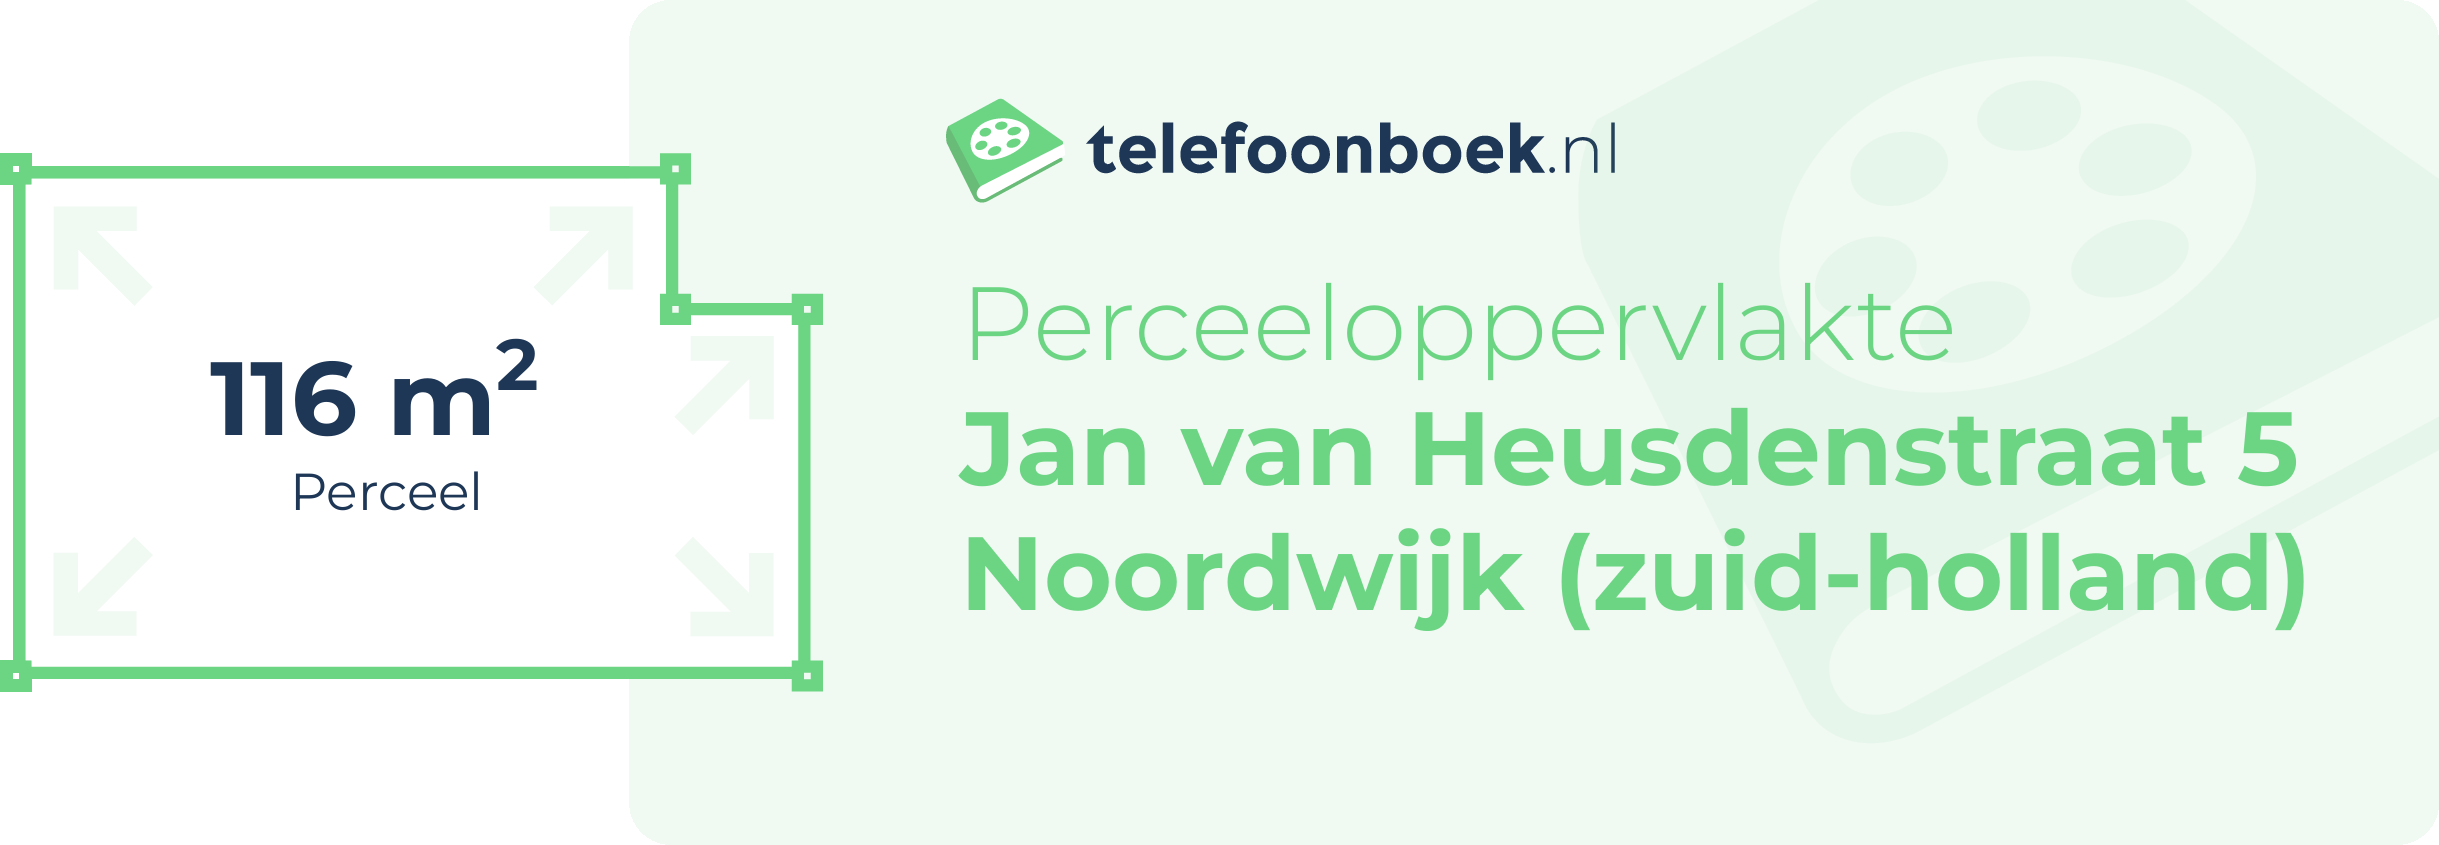 Perceeloppervlakte Jan Van Heusdenstraat 5 Noordwijk (Zuid-Holland)